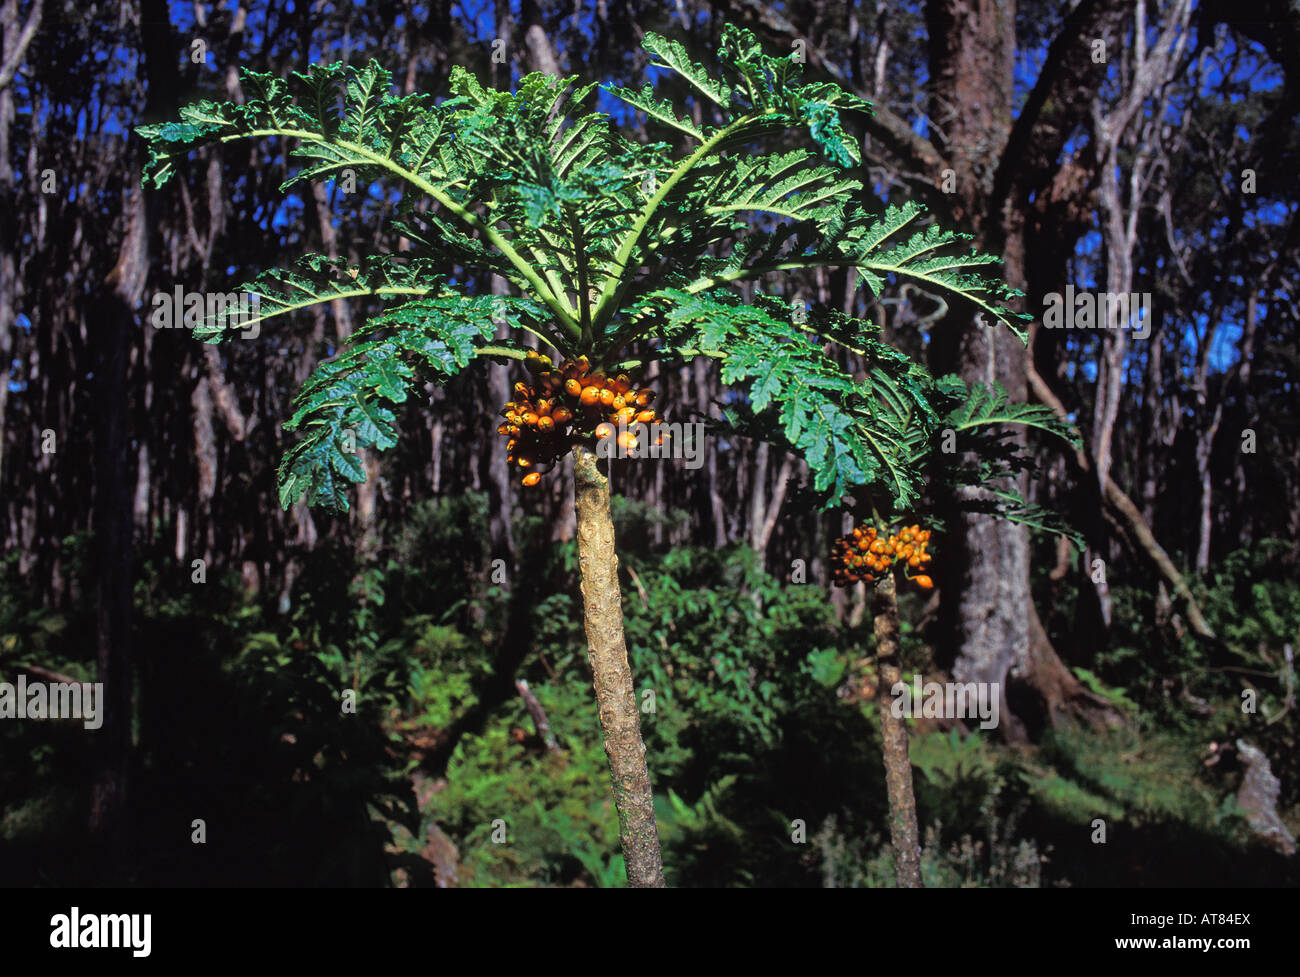 Les espèces rares et menacées, Lobelia (cyanea shipmanii). Il n'y a que 3 plantes connues à hawaii. Banque D'Images